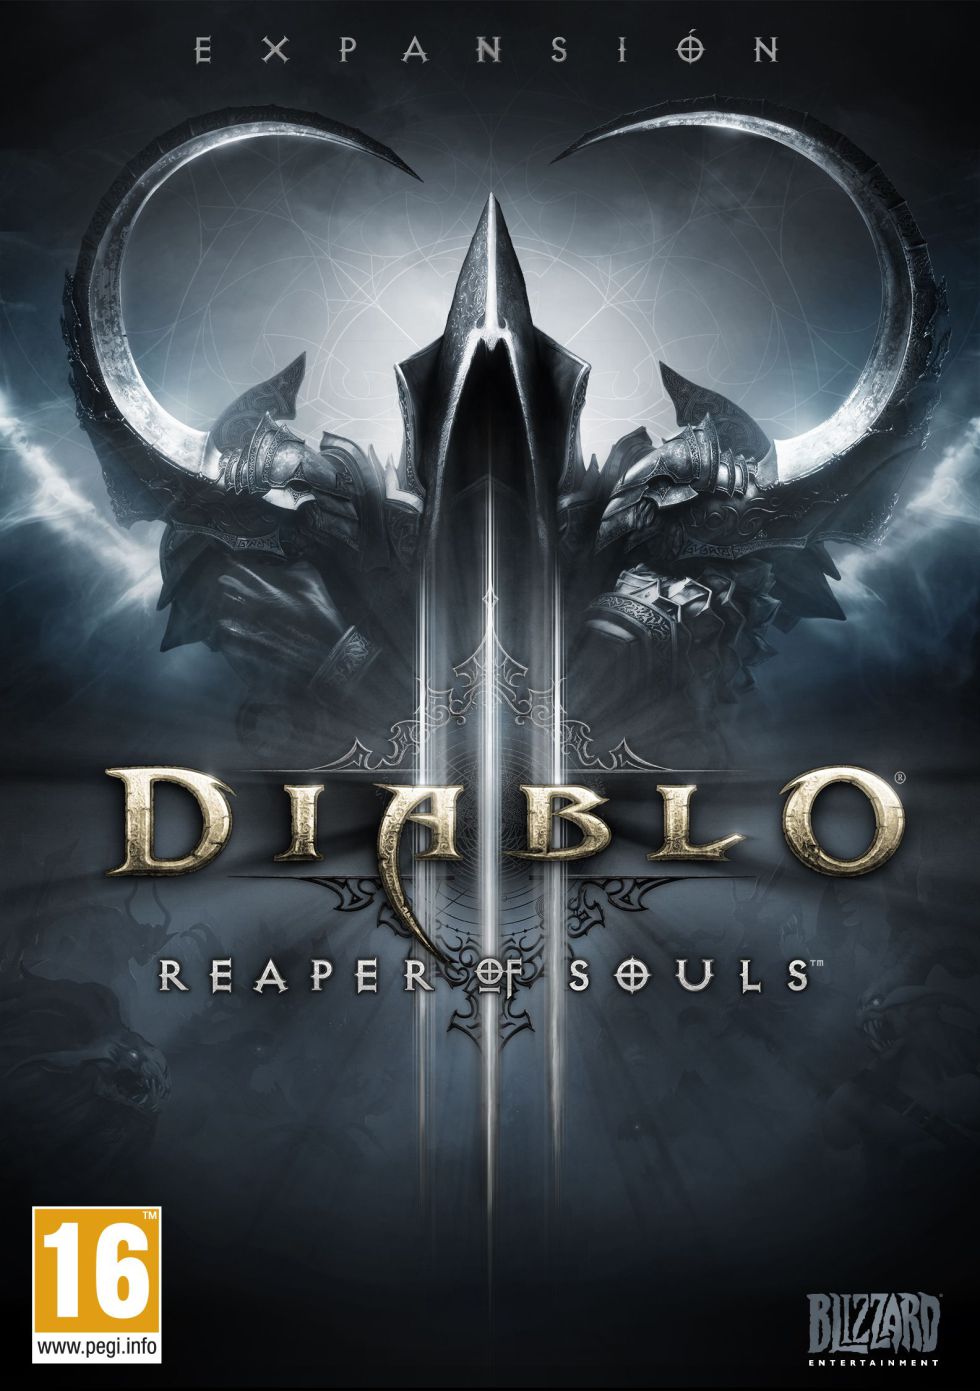 Diablo III Reaper of Souls saldrá a la venta el 25 de marzo